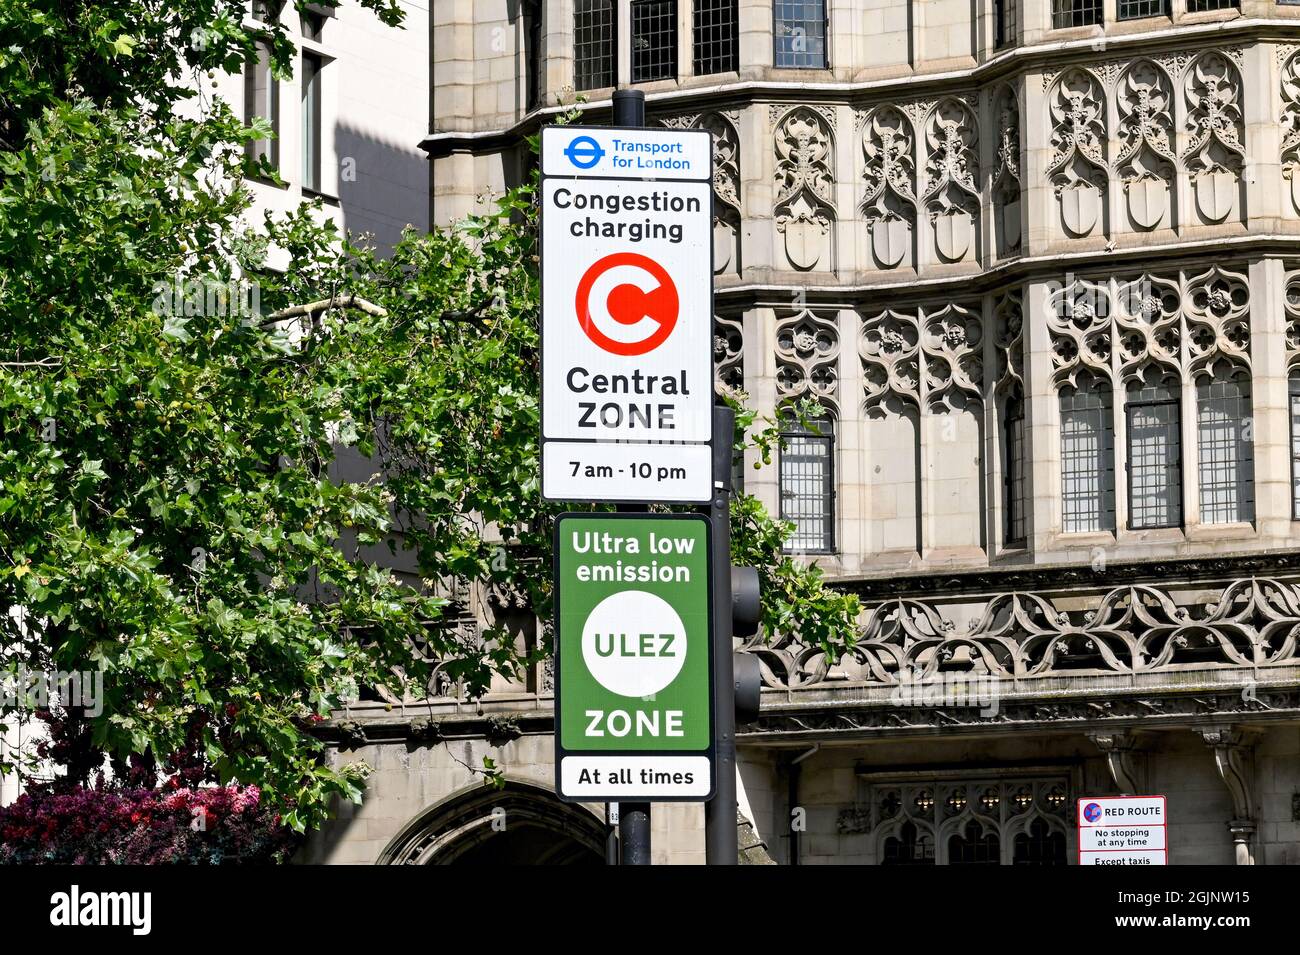 Londra, Inghilterra - Agosto 2021: Accedi al centro di Londra avvertendo i conducenti che stanno entrando in una zona di ricarica per la congestione e in una zona a emissioni ultra basse Foto Stock